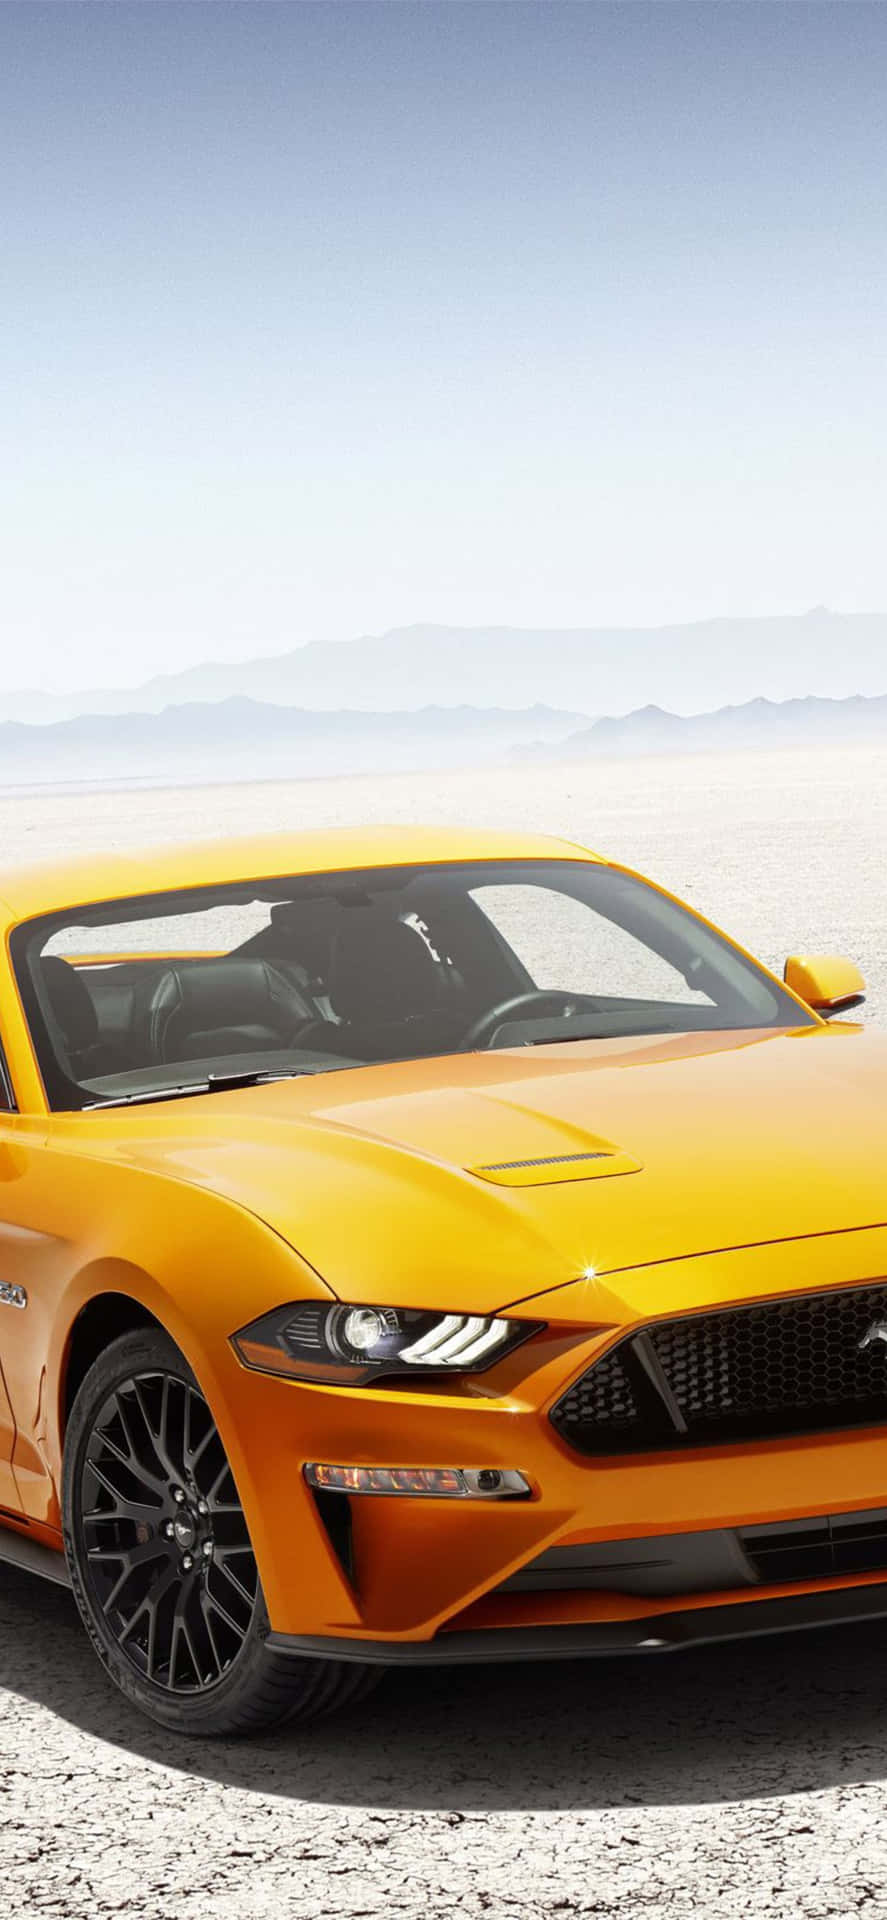 Oford Mustang Gt 2019 É Exibido No Deserto. Papel de Parede